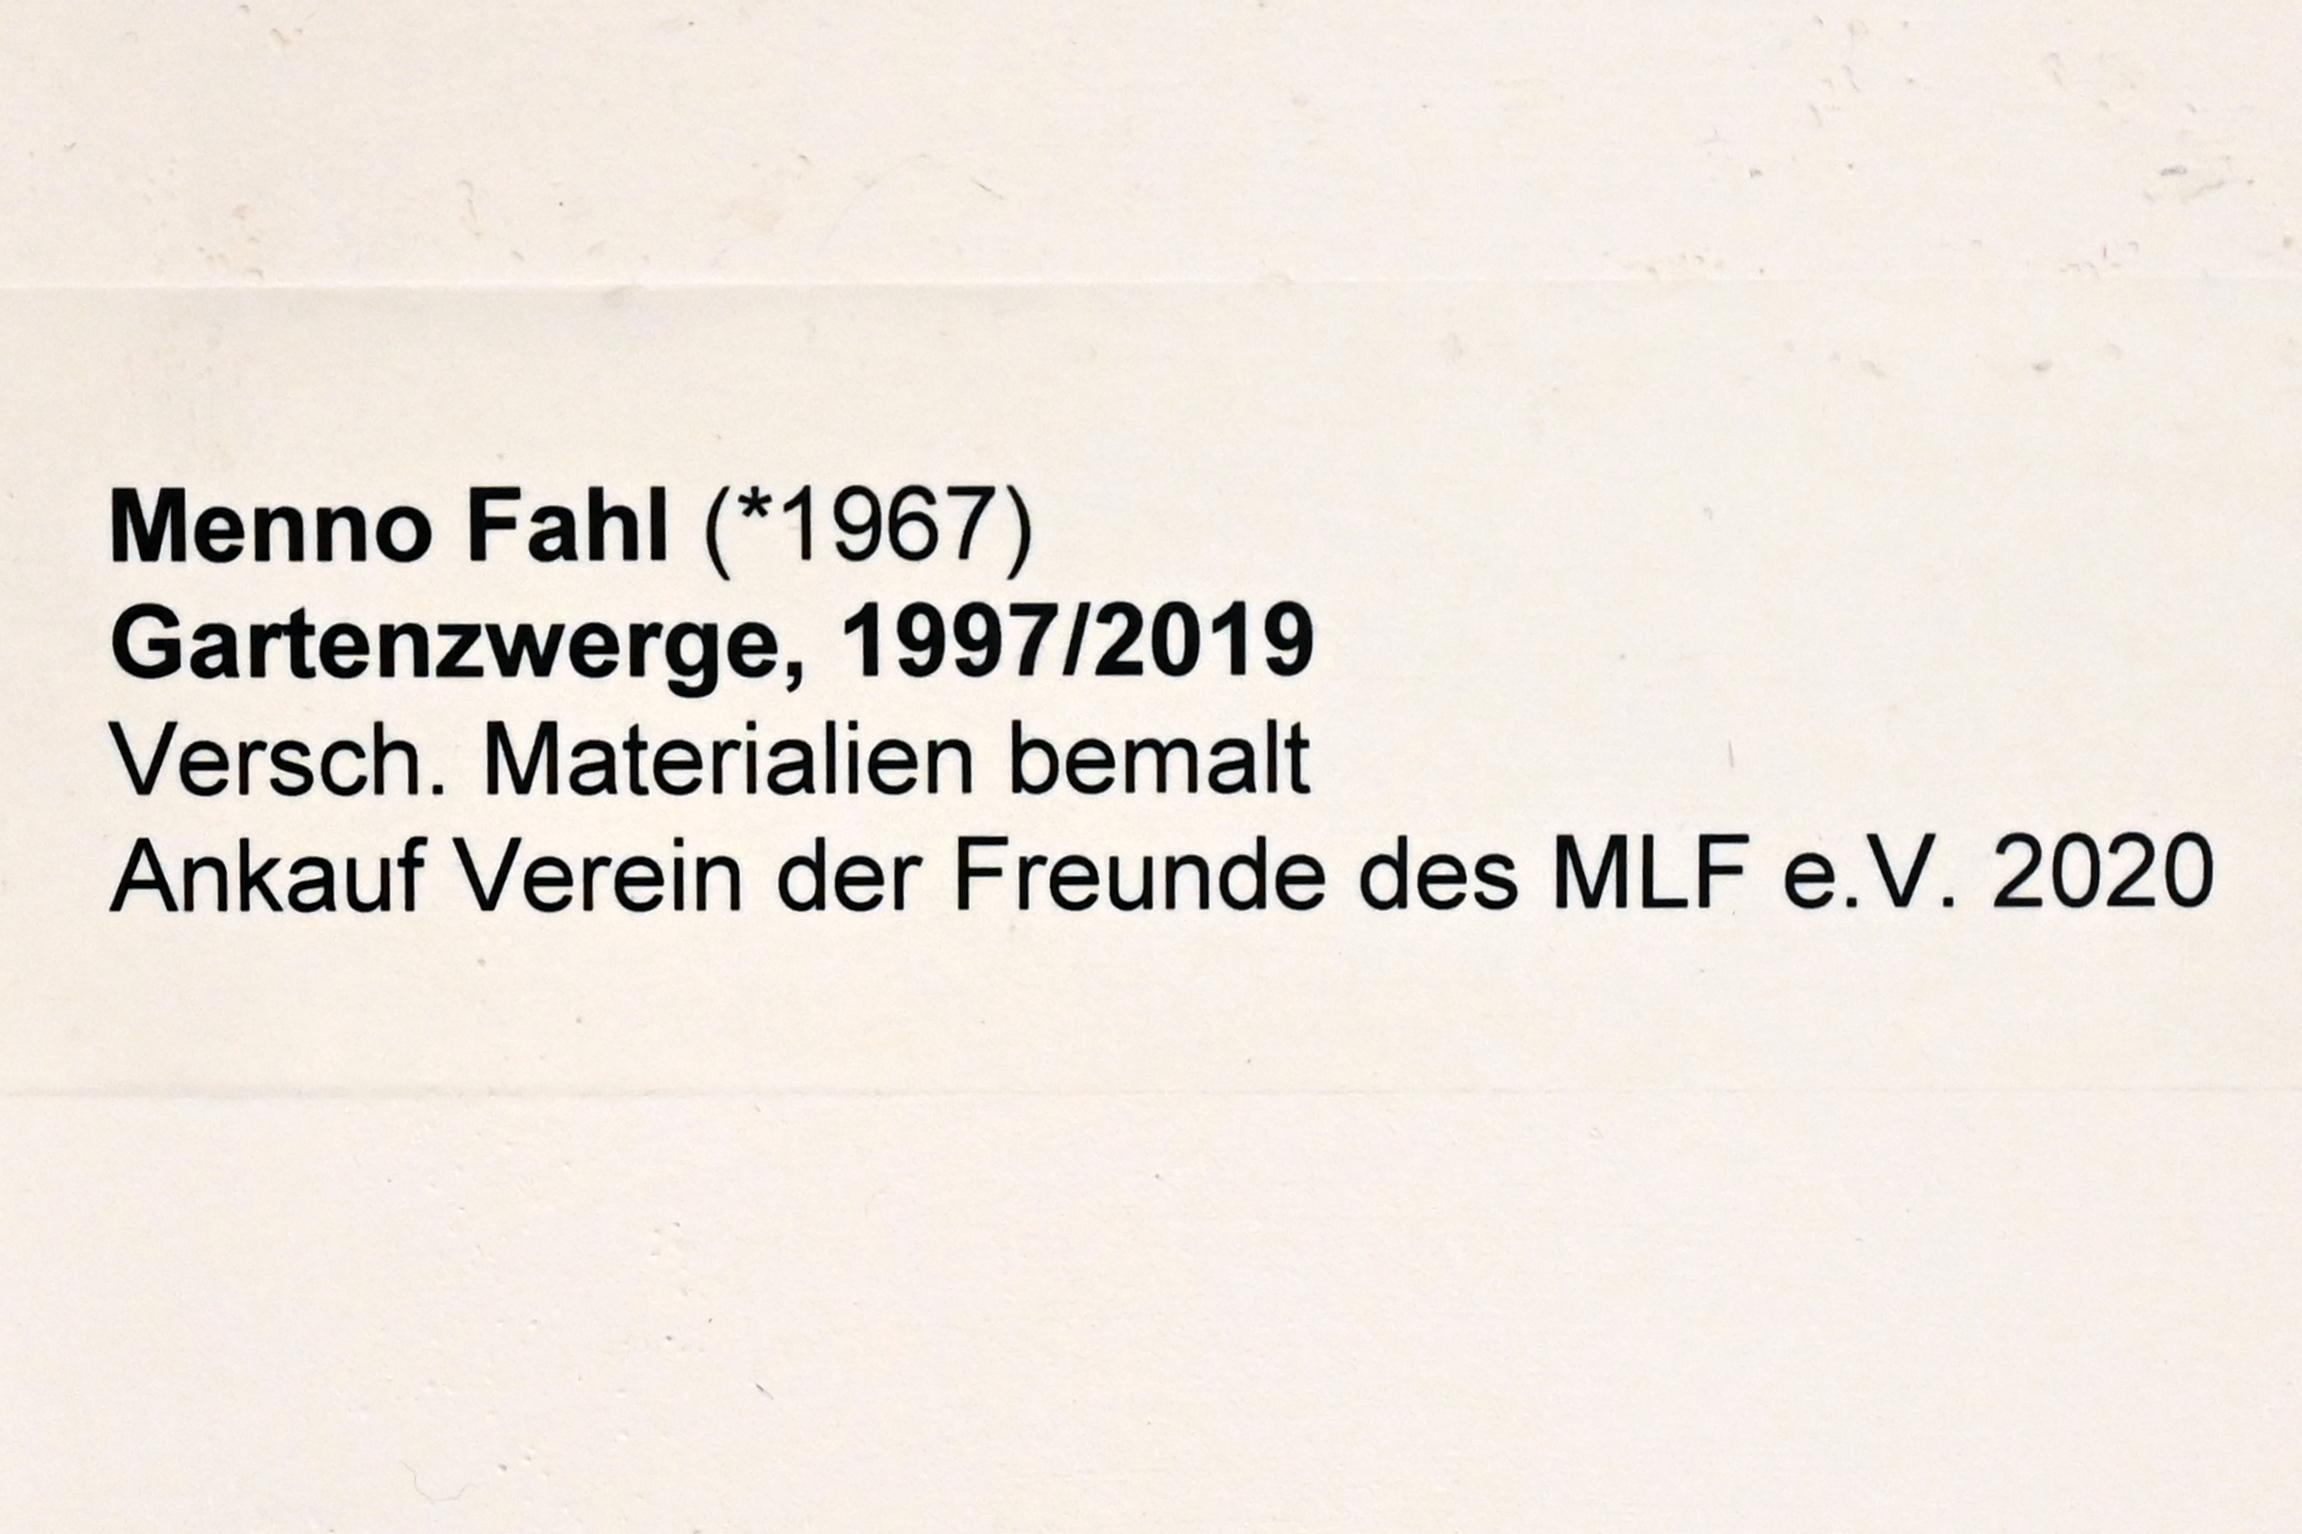 Menno Fahl (1997), Gartenzwerge, Neumarkt in der Oberpfalz, Museum Lothar Fischer, Obergeschoß Raum 1, 1997, Bild 3/3